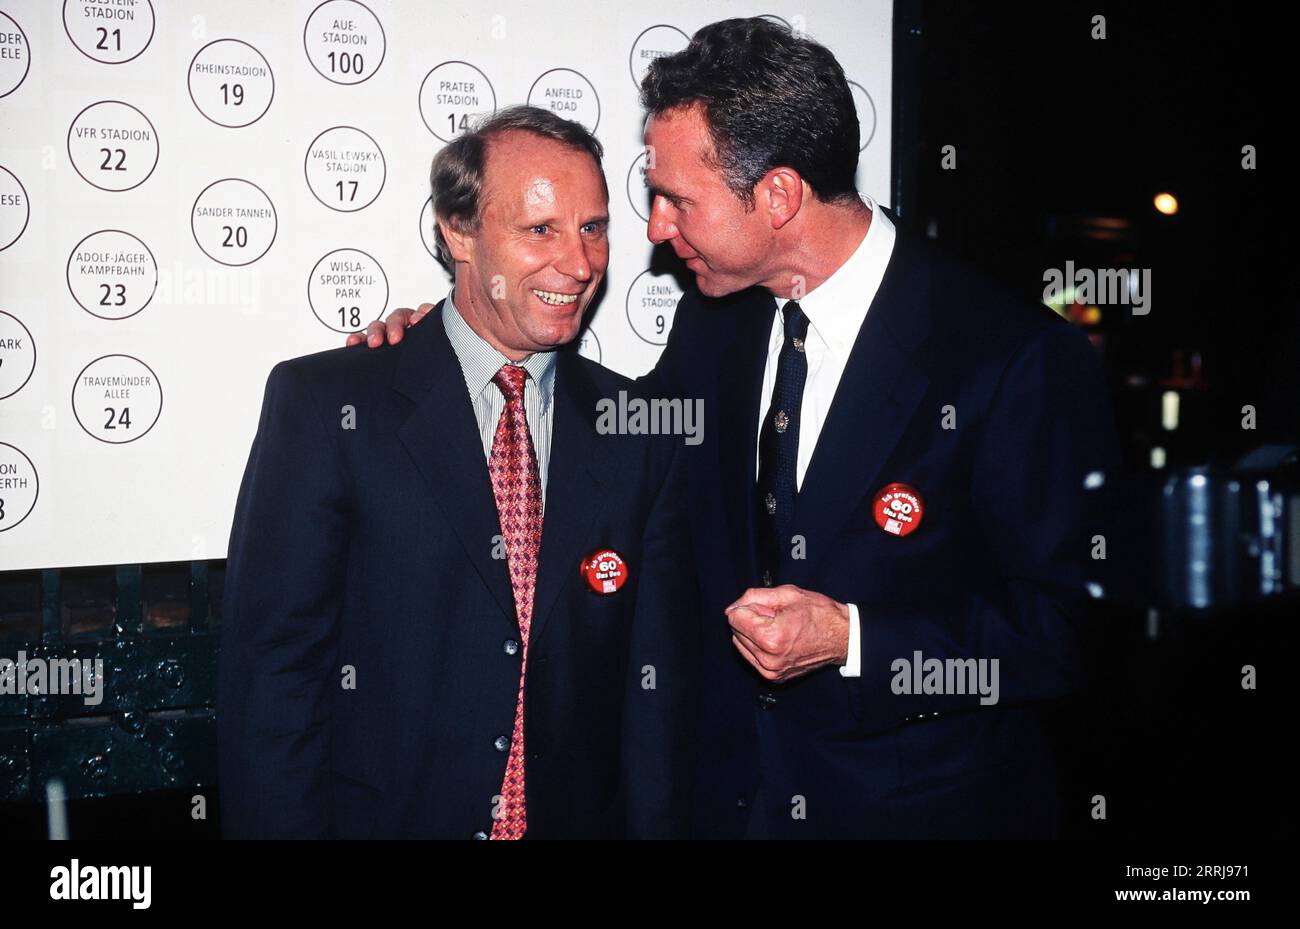 Berti Vogts, ehemaliger deutscher Fußballspieler und Trainer, mit Kollege Karl Heinz Rummenigge beim 60. Geburtstag von Fußballspieler Uwe Seeler ad Amburgo, Deutschland 1996. Foto Stock